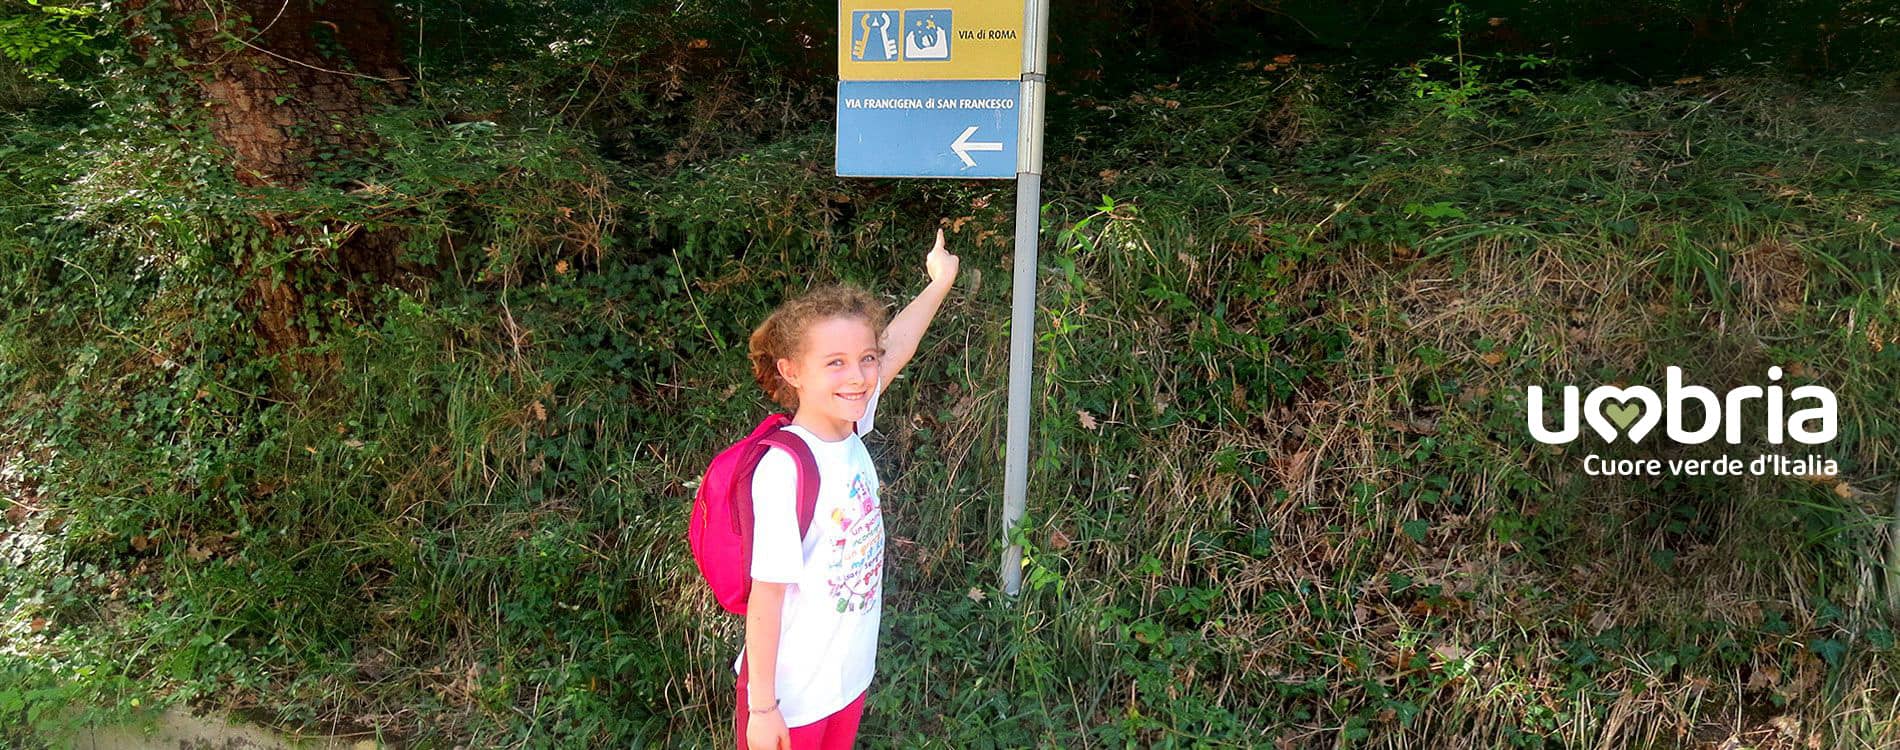 Les panneaux directionnels du Chemin de St François: signalisation jaune-bleu, Tau jaune, signalisation CAI blanc-rouge